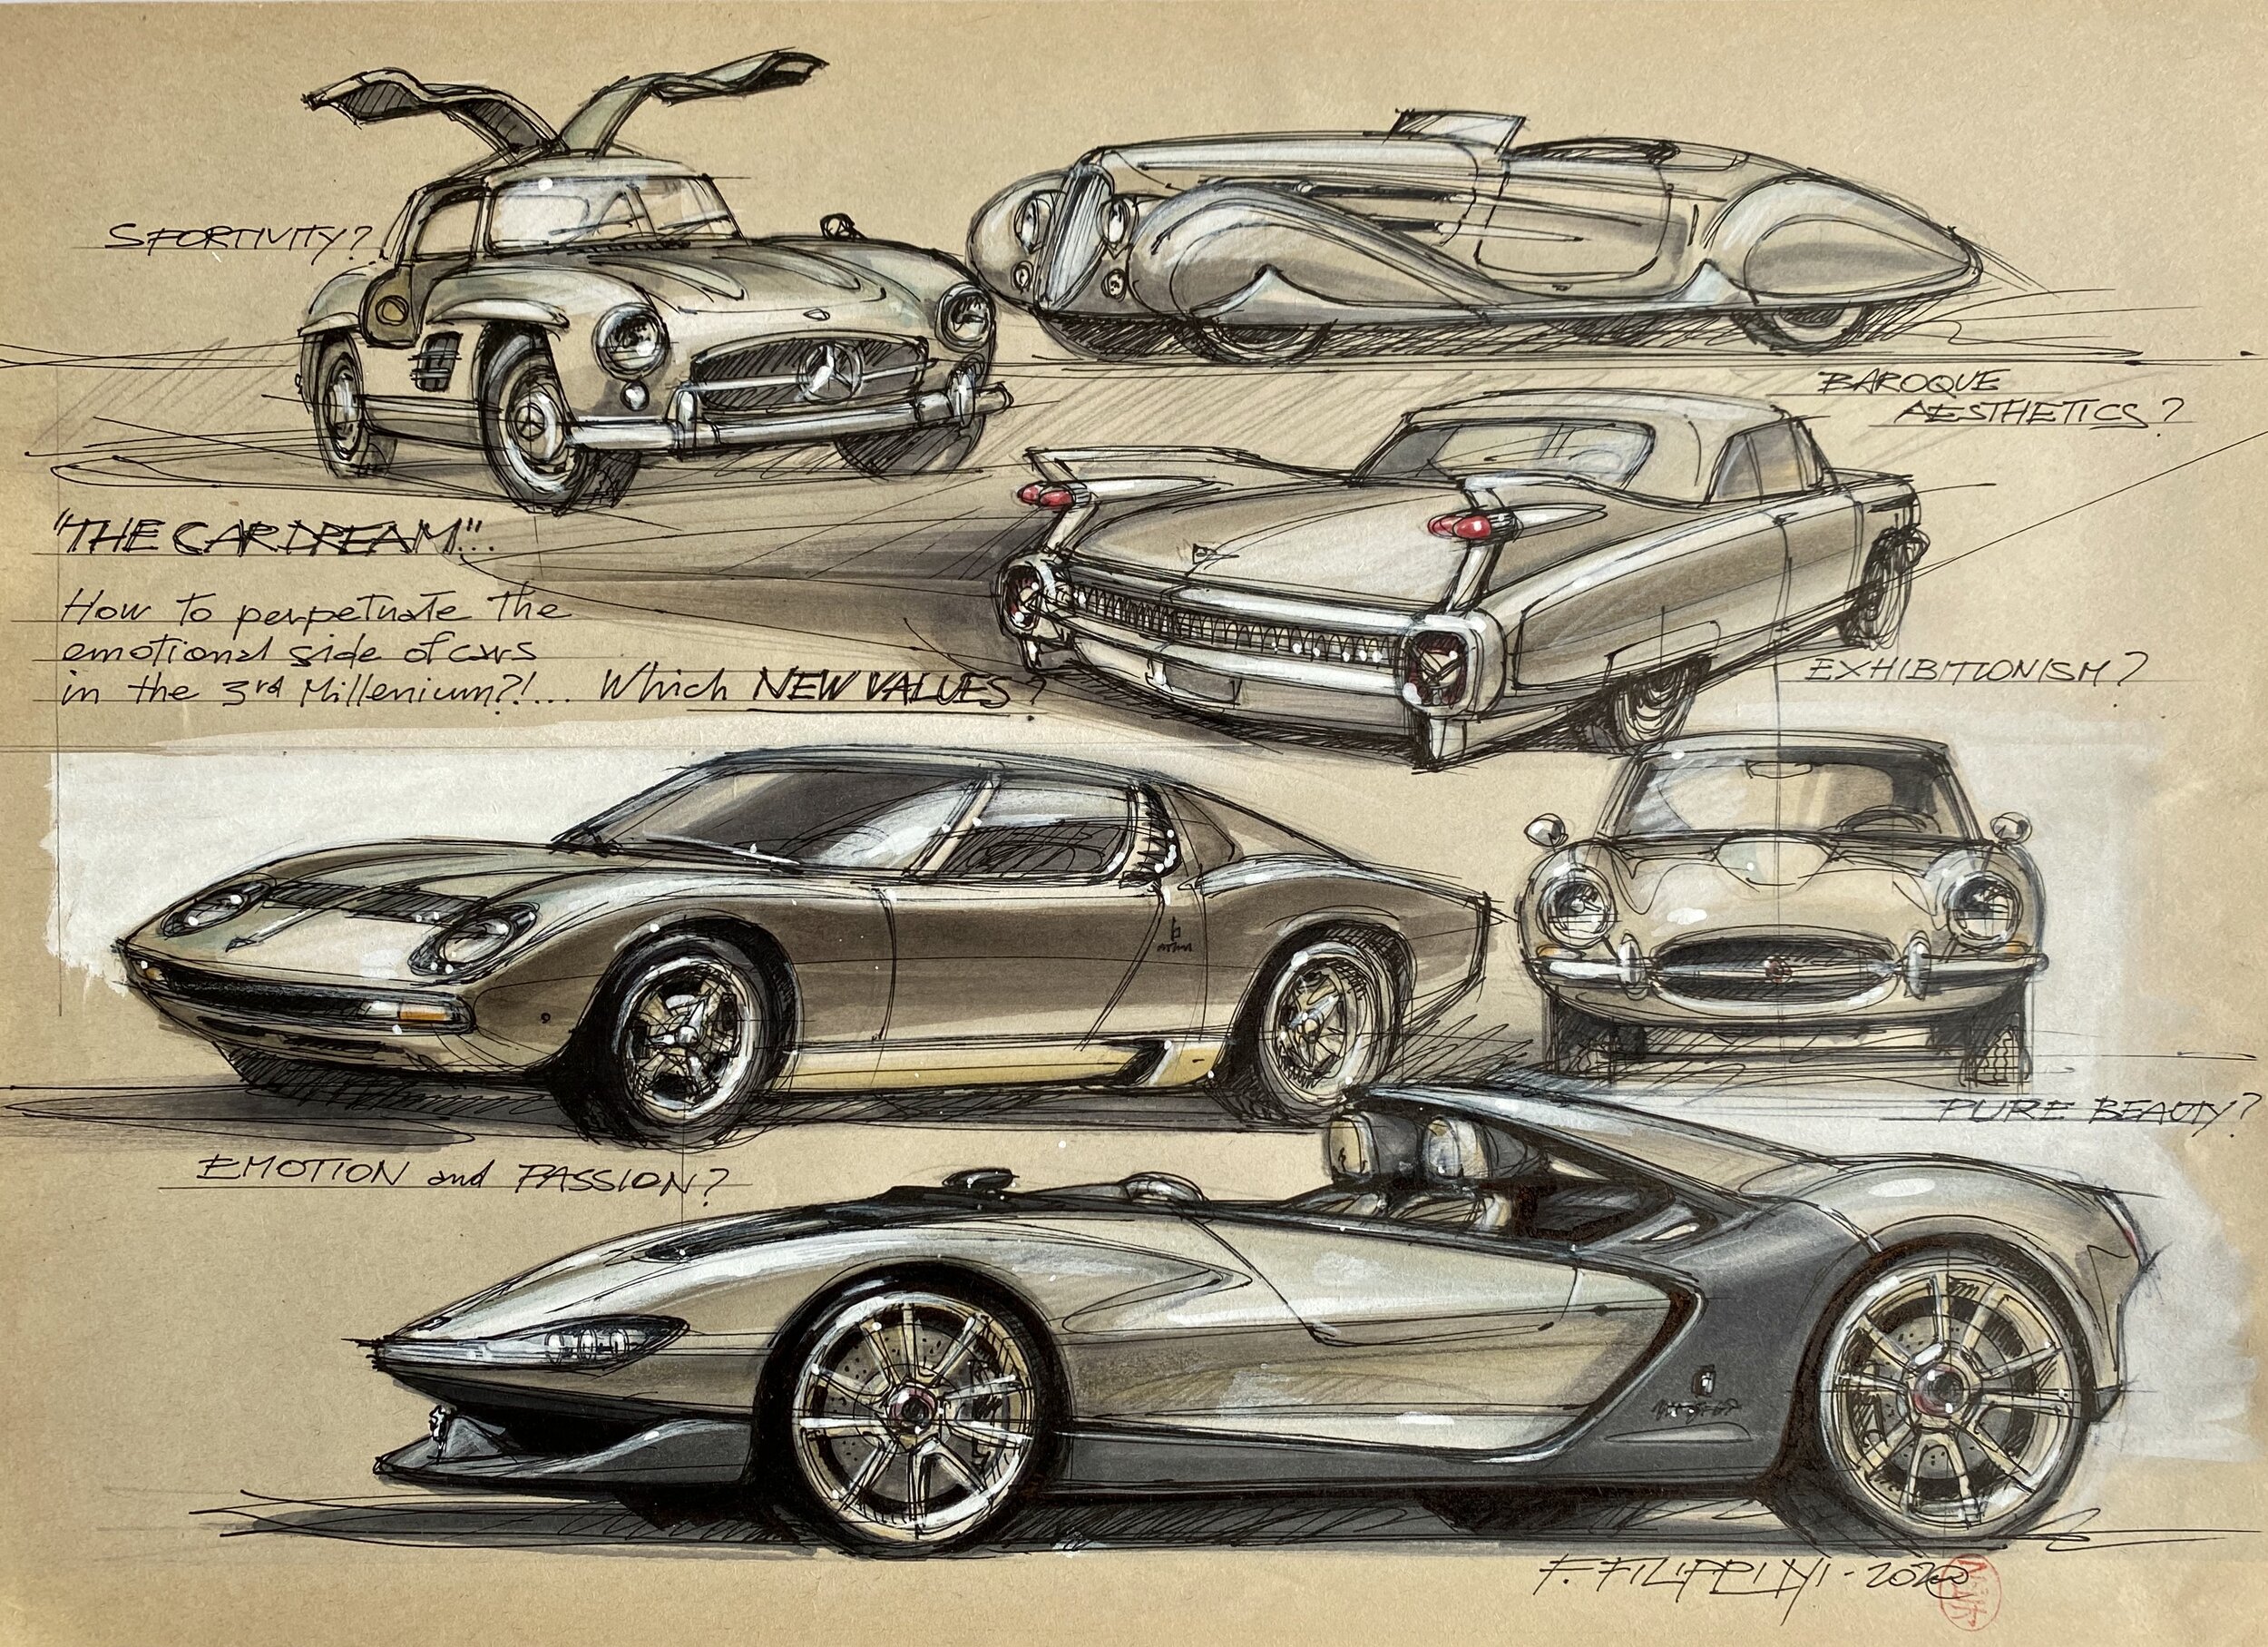 Download Futuristic Innovative Car Design Concept Wallpaper | Wallpapers.com